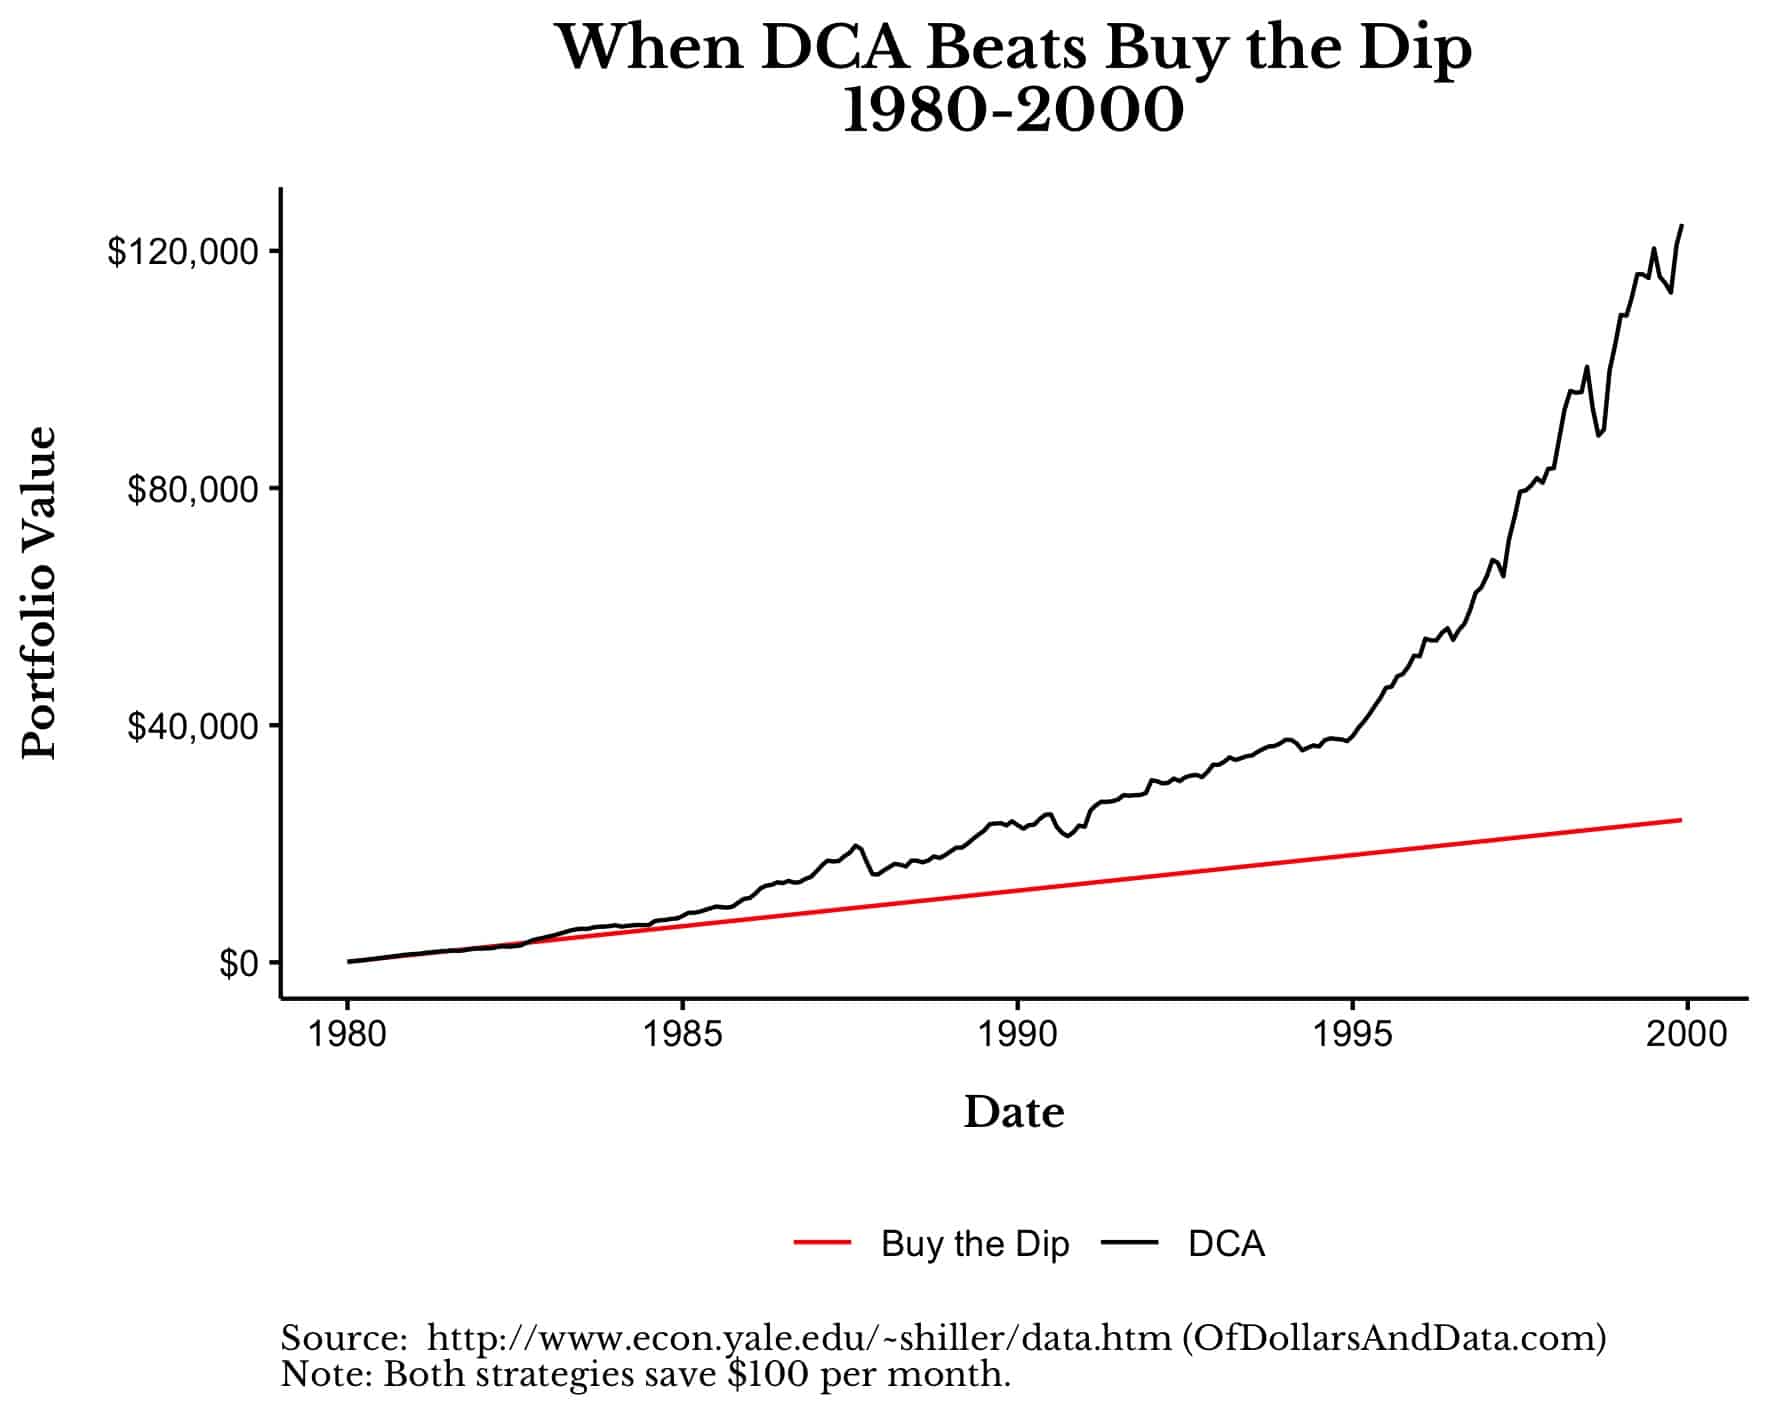 When DCA beats Buy the Dip, 1963-1983